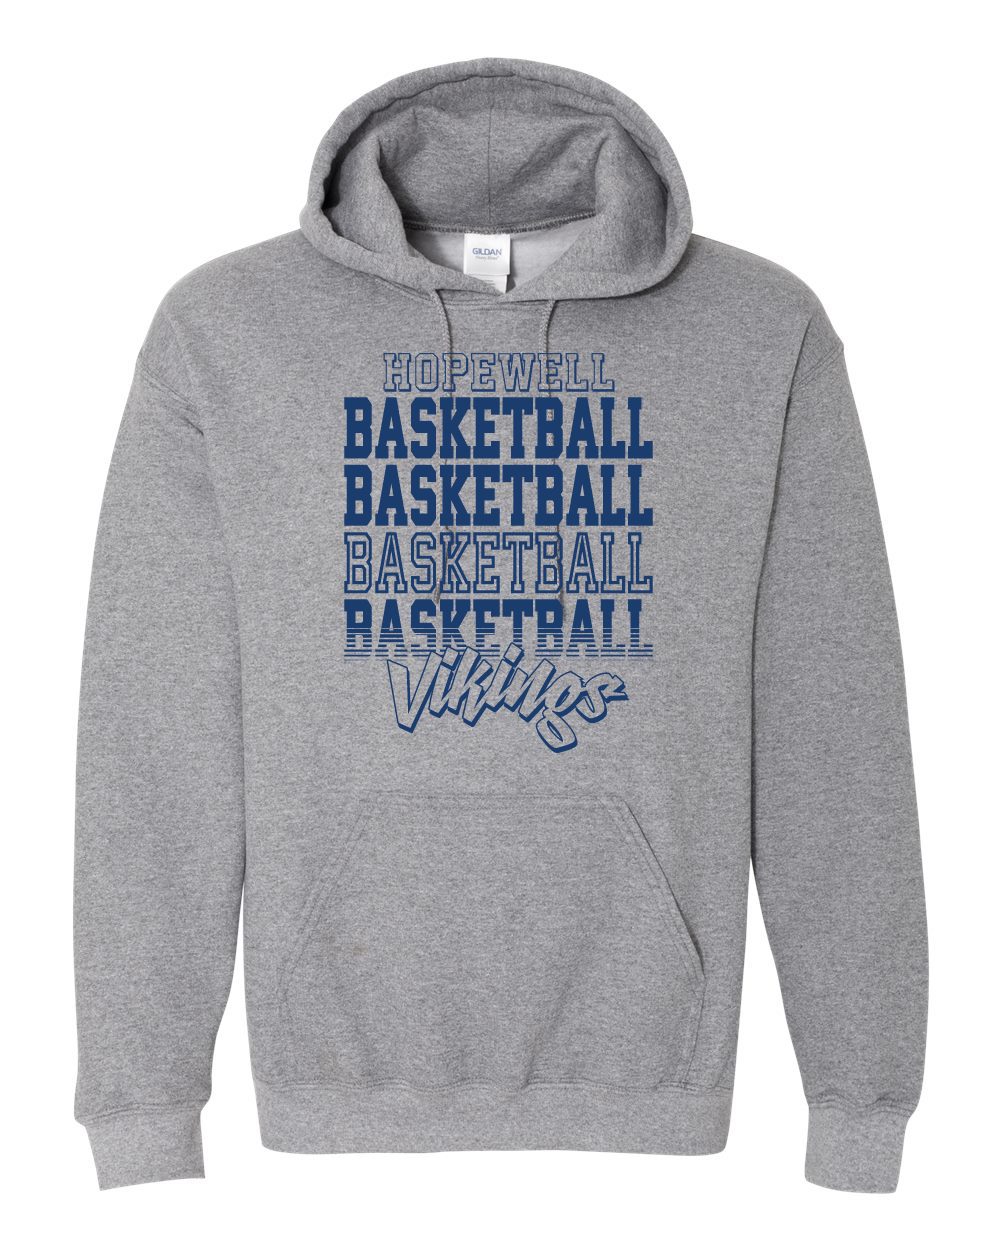 Hopewell Booster Sweatshirt Grey (Basketball Life)